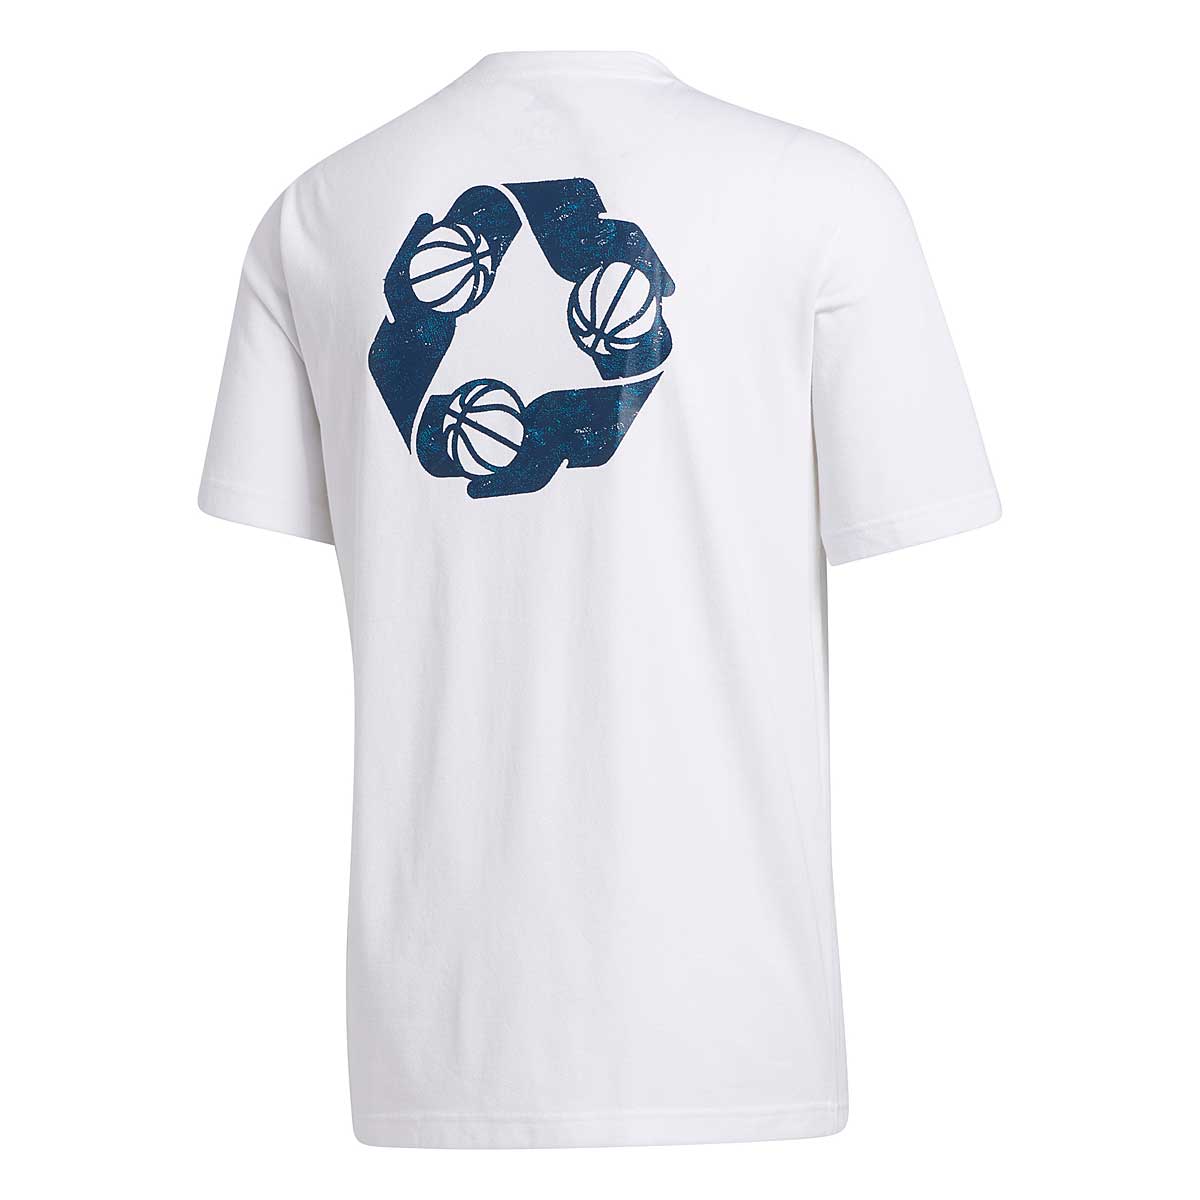 Adidas Originals Bfto T-Shirt, White